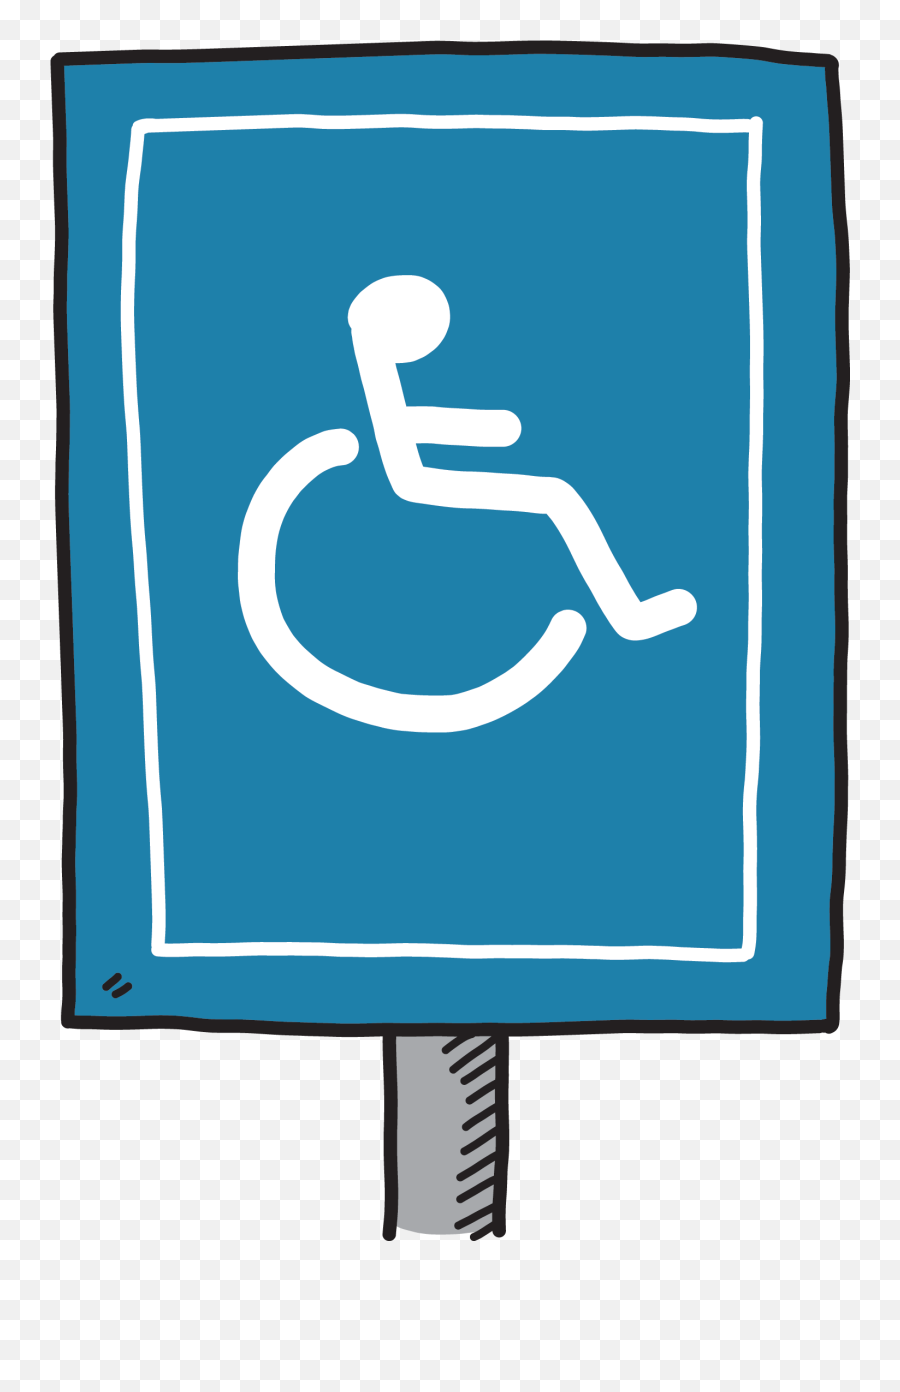 International Symbol Of Access - All Gender Bathroom Sign Parking Disabled Sign Emoji,Bathroom Sign Png